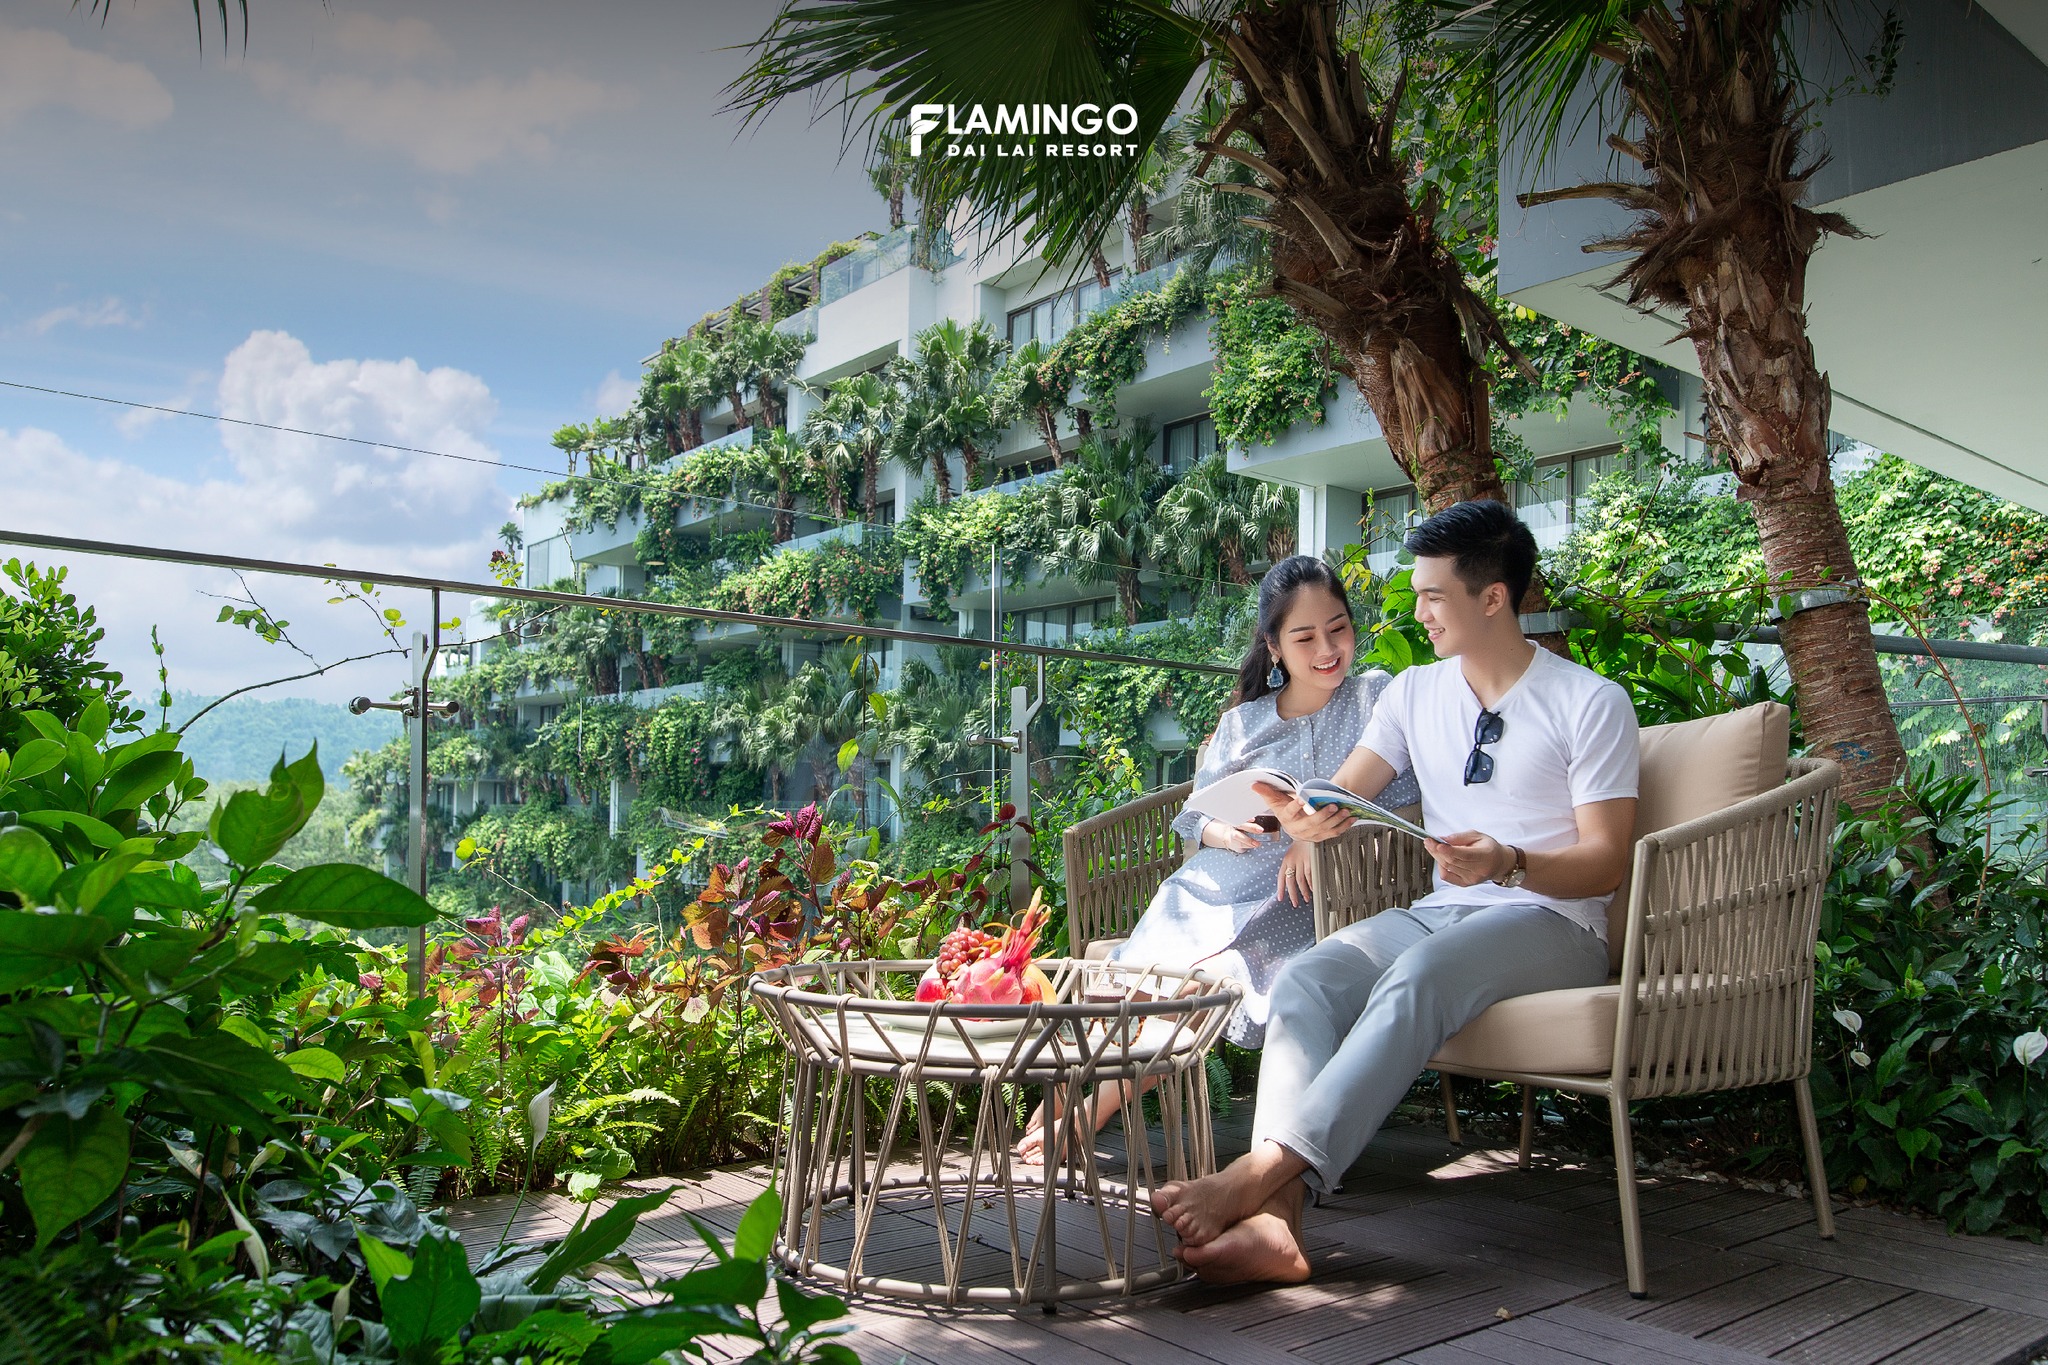 Forest In the Sky – Flamingo Đại Lải Resort – nghỉ dưỡng giữa khu rừng nhiệt đới nổi bật 50